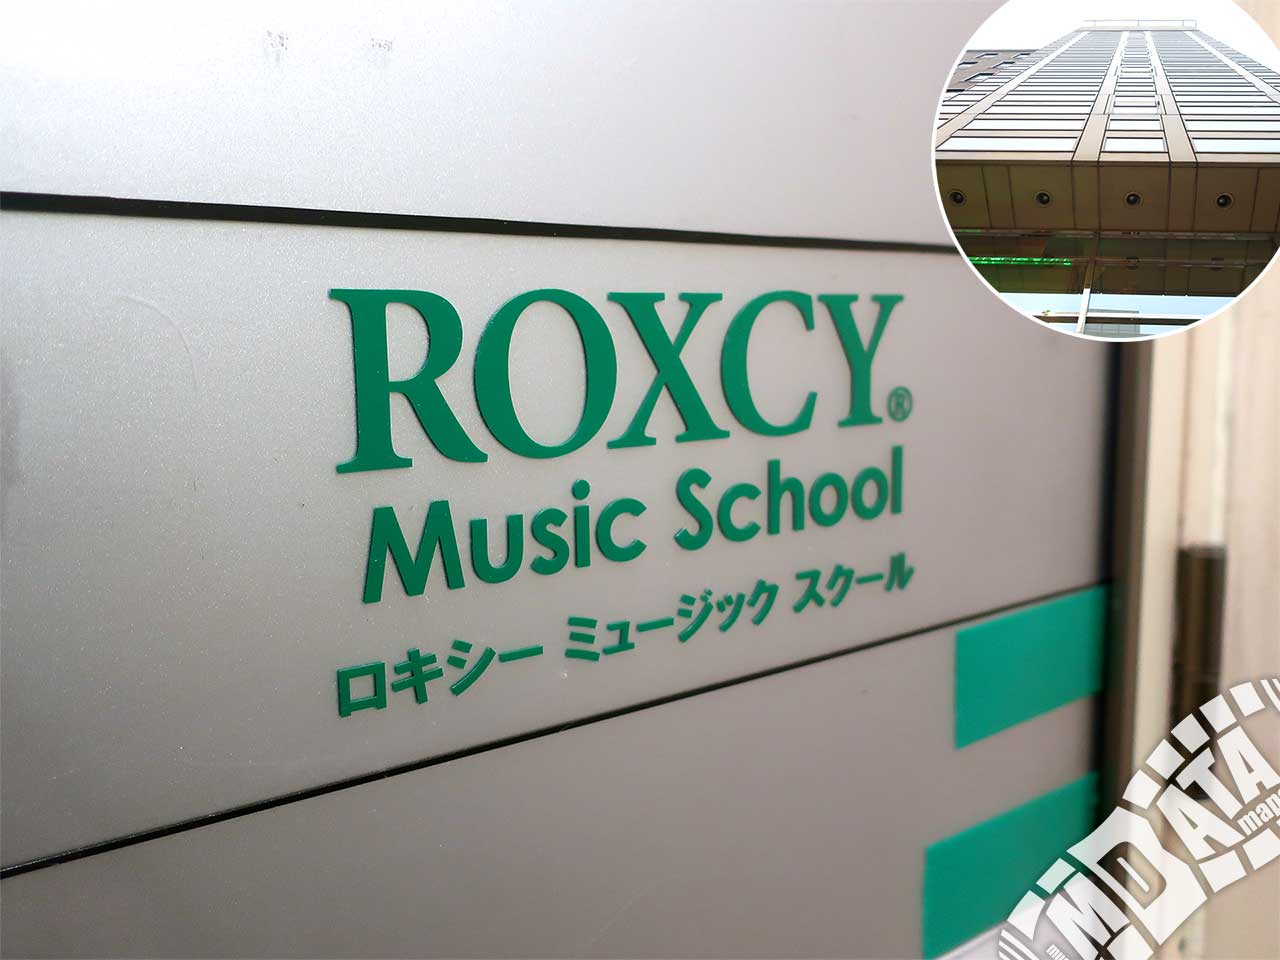 ロキシーミュージックスクール 京都三条校の写真 撮影日:2019/1/31 Photo taken on 2019/01/31